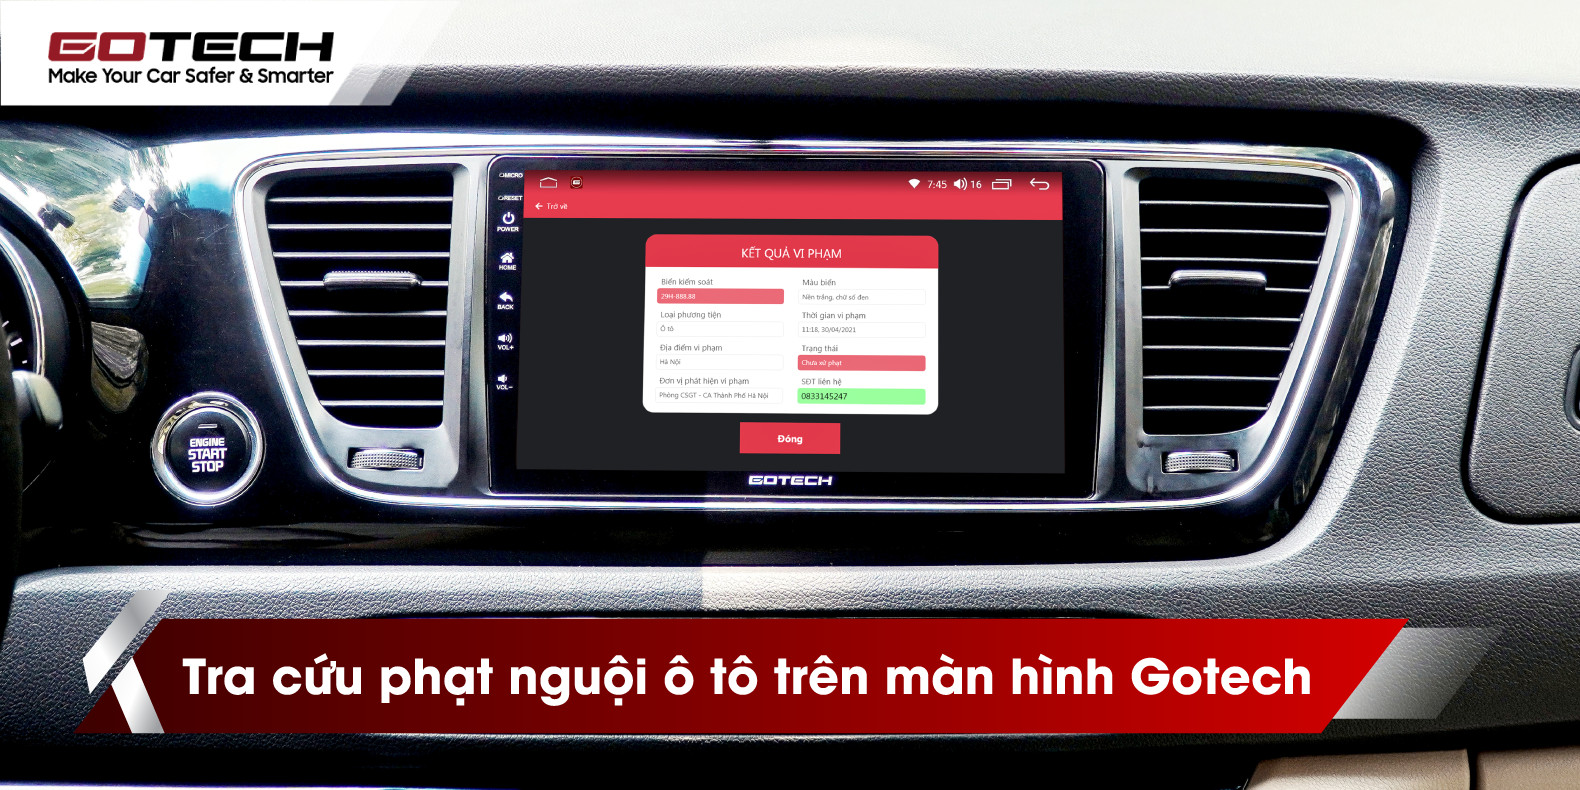 Phần mềm tra cứu phạt nguội ô tô trên màn hình ô tô Gotech